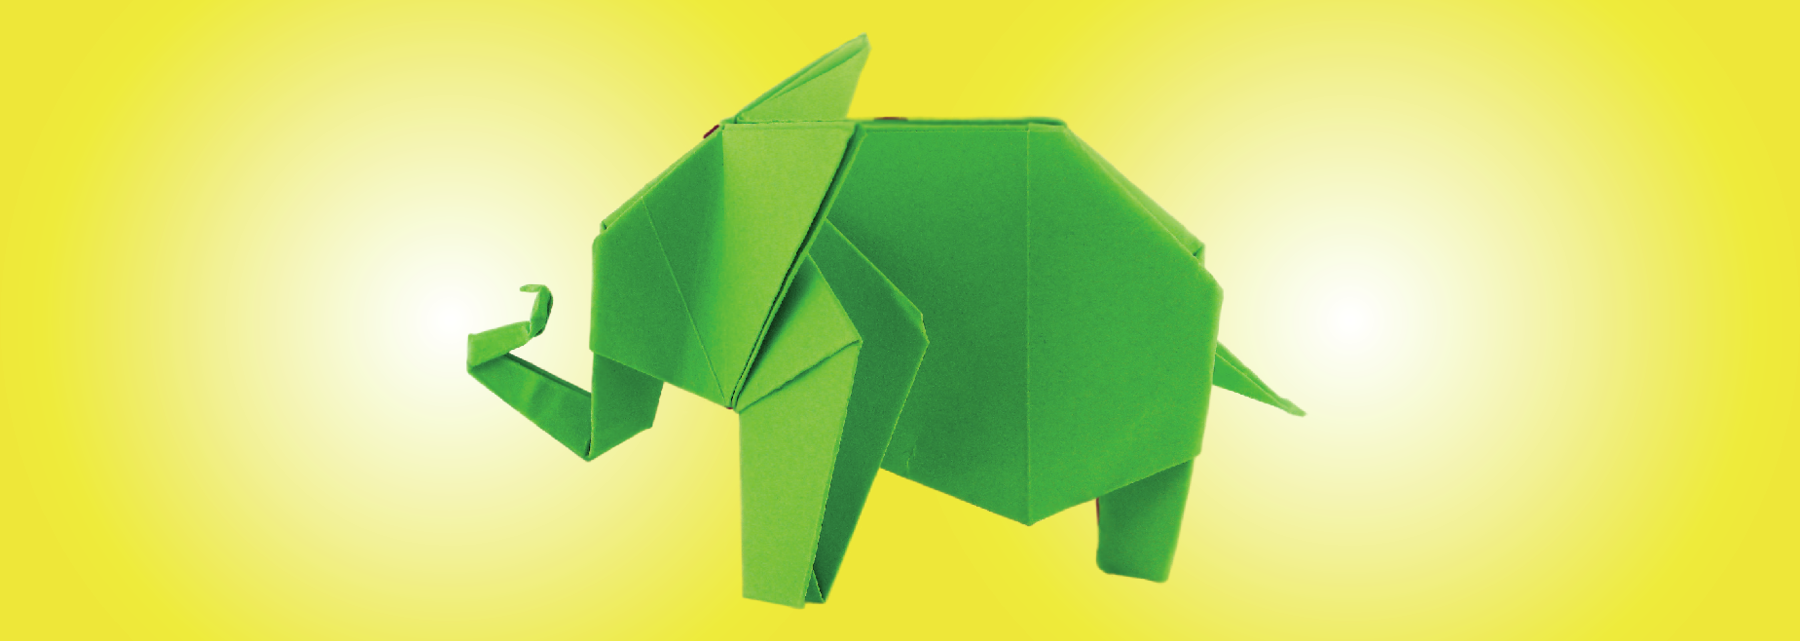 Fotografia. Dobradura de um elefante de cor verde, com o corpo para a esquerda, com a tromba para cima, com uma ponta e rabo na outra ponta, pequeno.